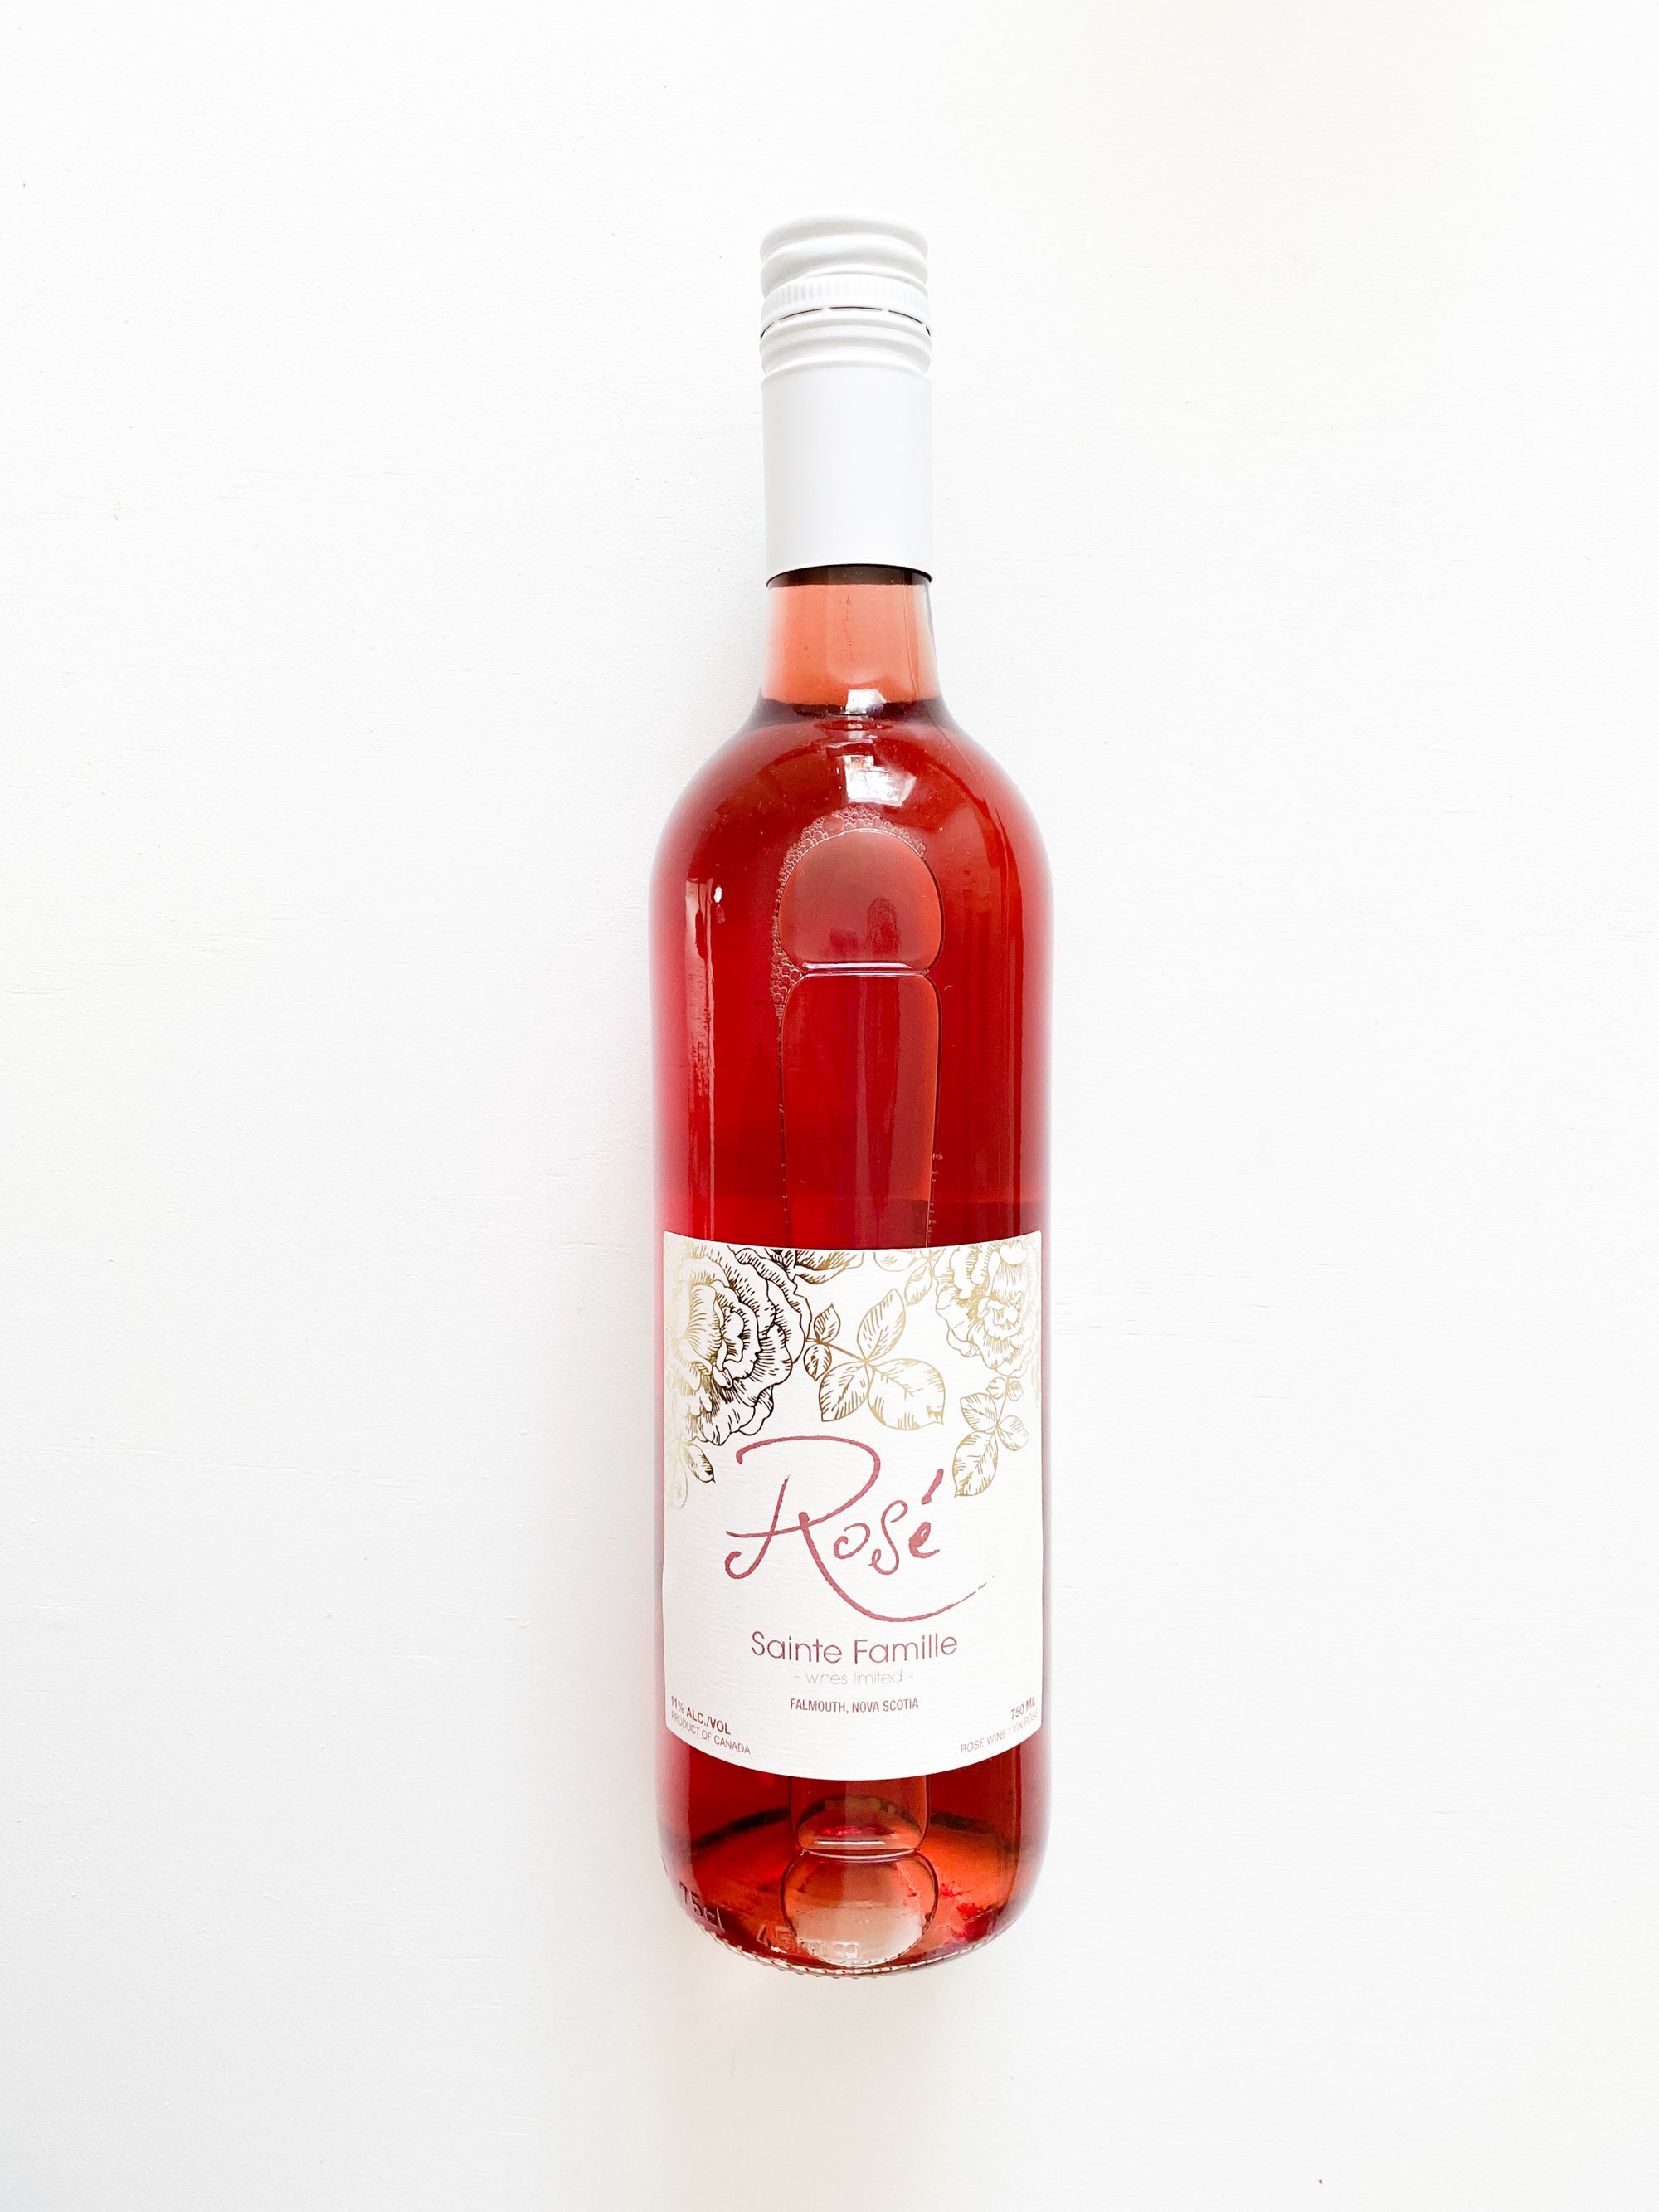 Bottle of Sainte-Famille Rosé